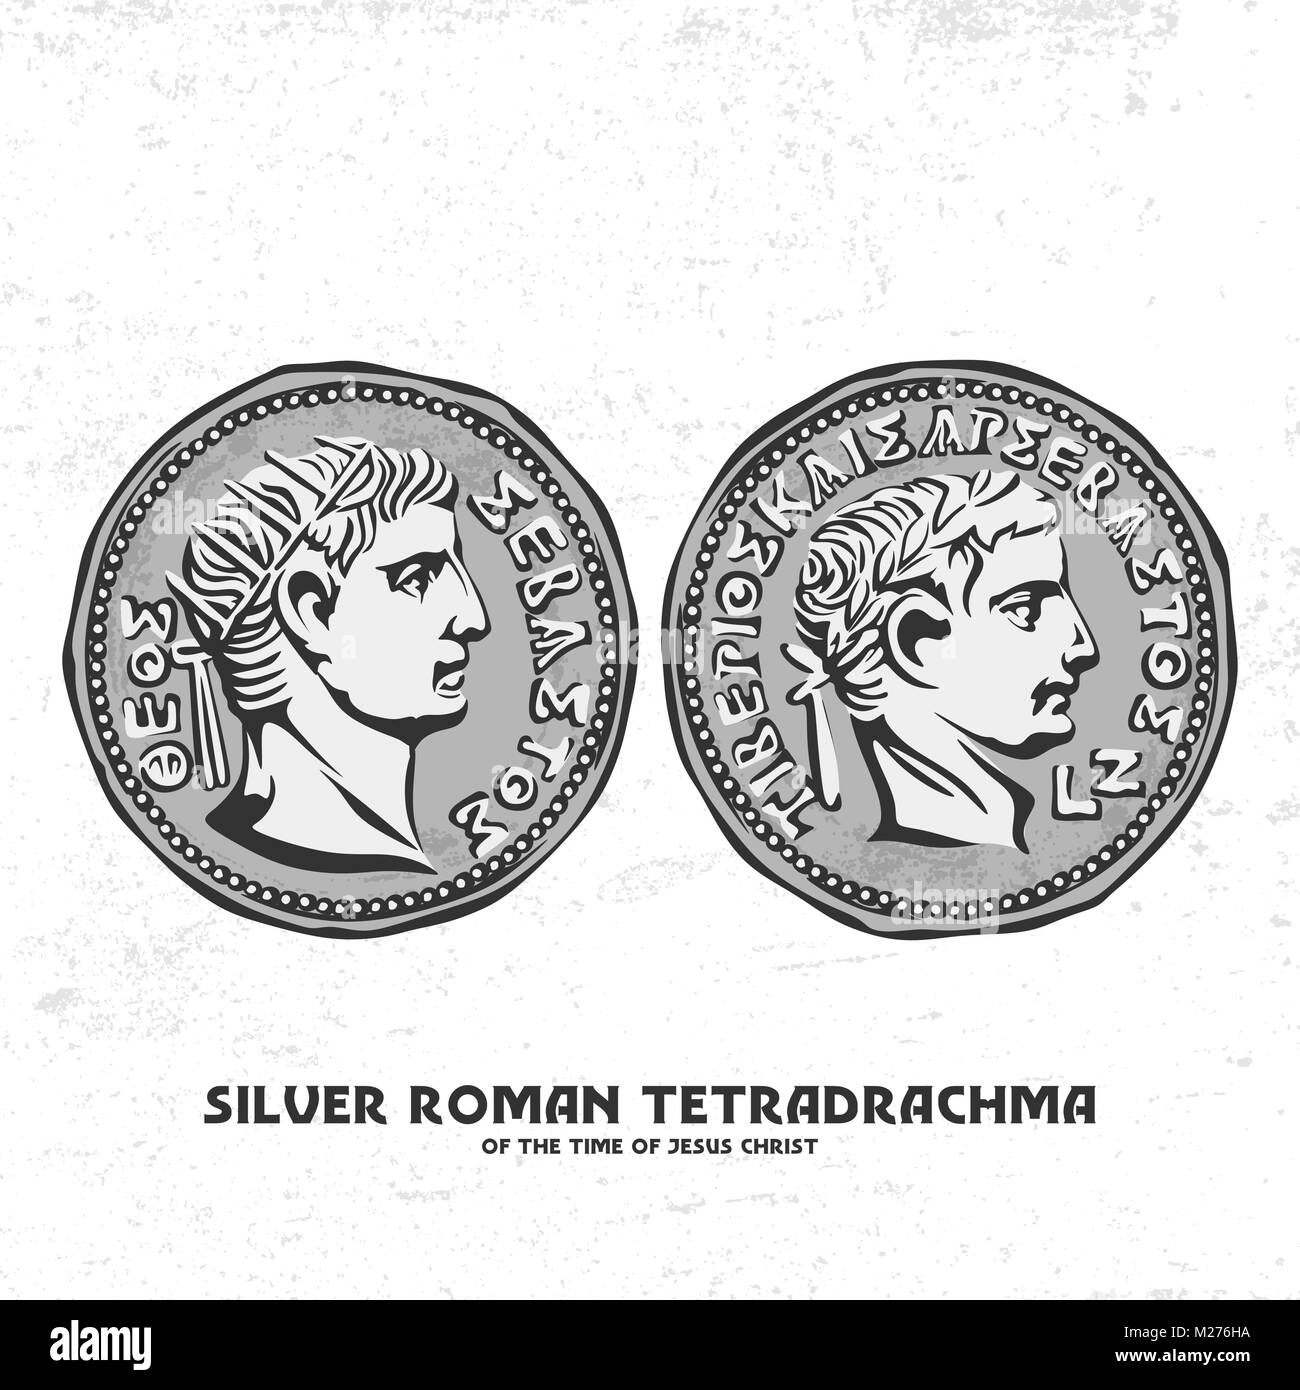 Antica moneta. Argento tetradrachma romana del tempo di Gesù Cristo. Forse per tali monete d'argento, Giuda ha tradito Cristo. Illustrazione Vettoriale